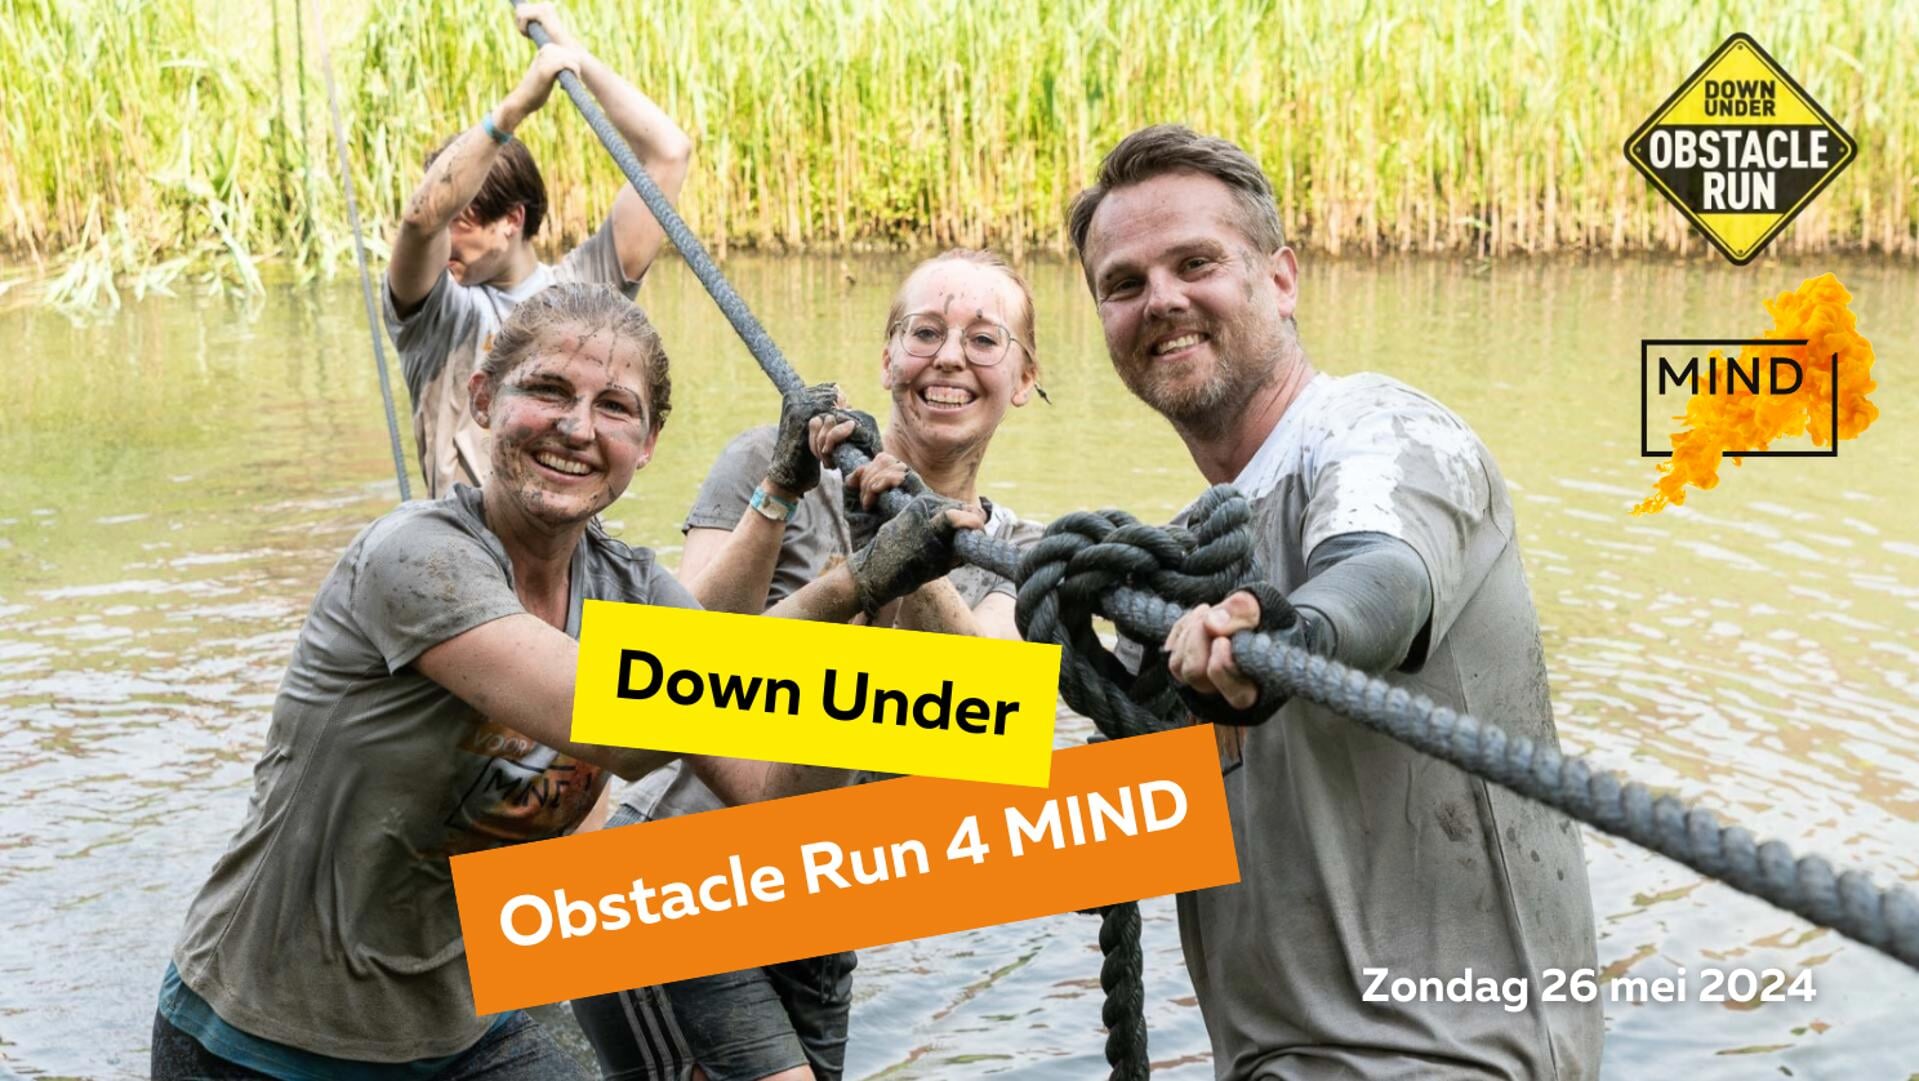 • Obstacle Run voor Stichting MIND in Down Under.